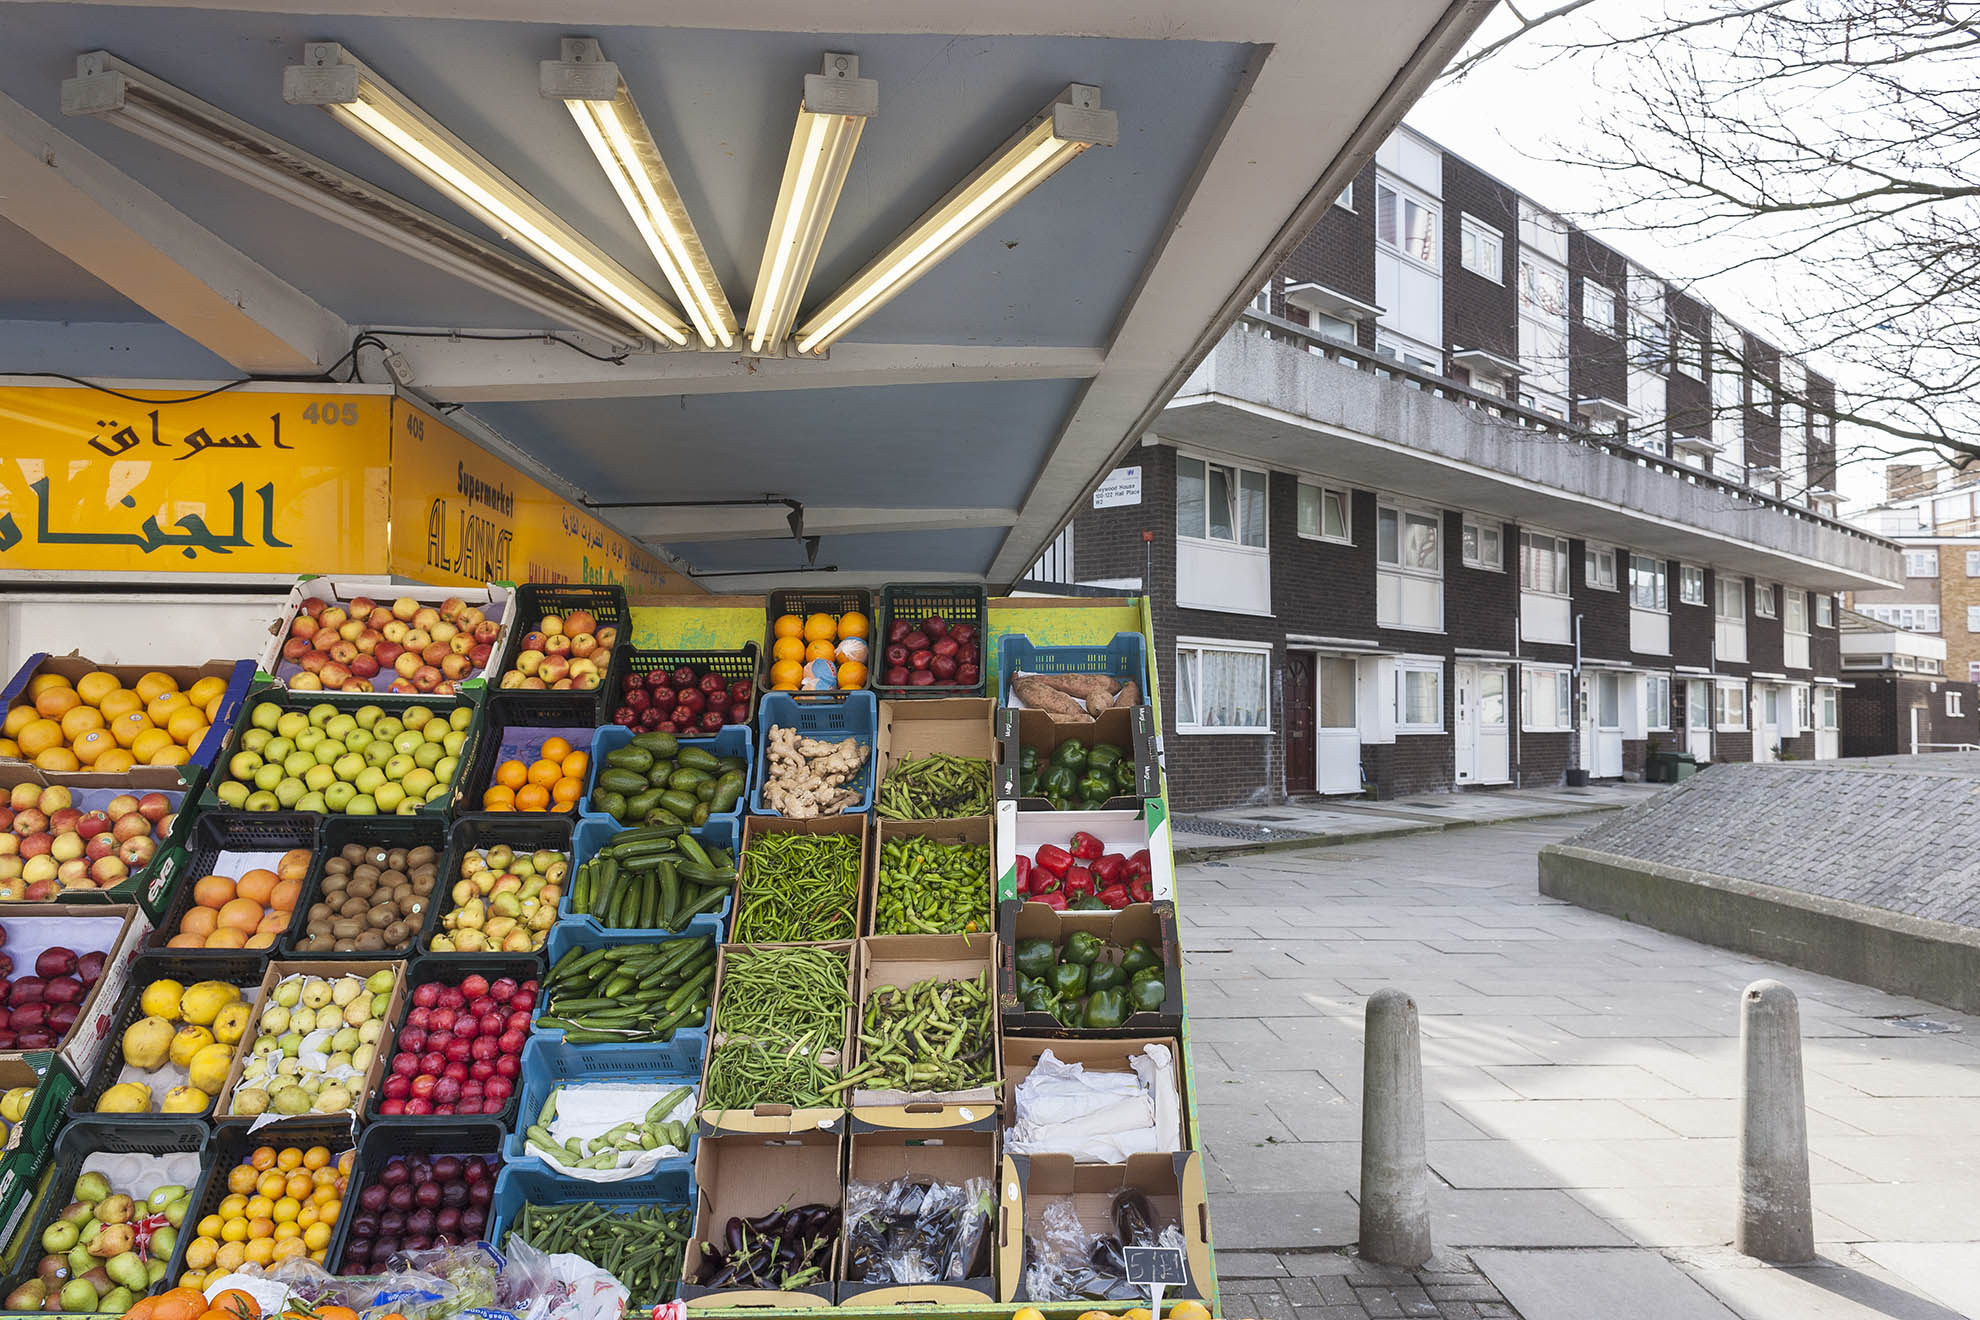 Fruit &amp; vegetable stall, Edgware, London.